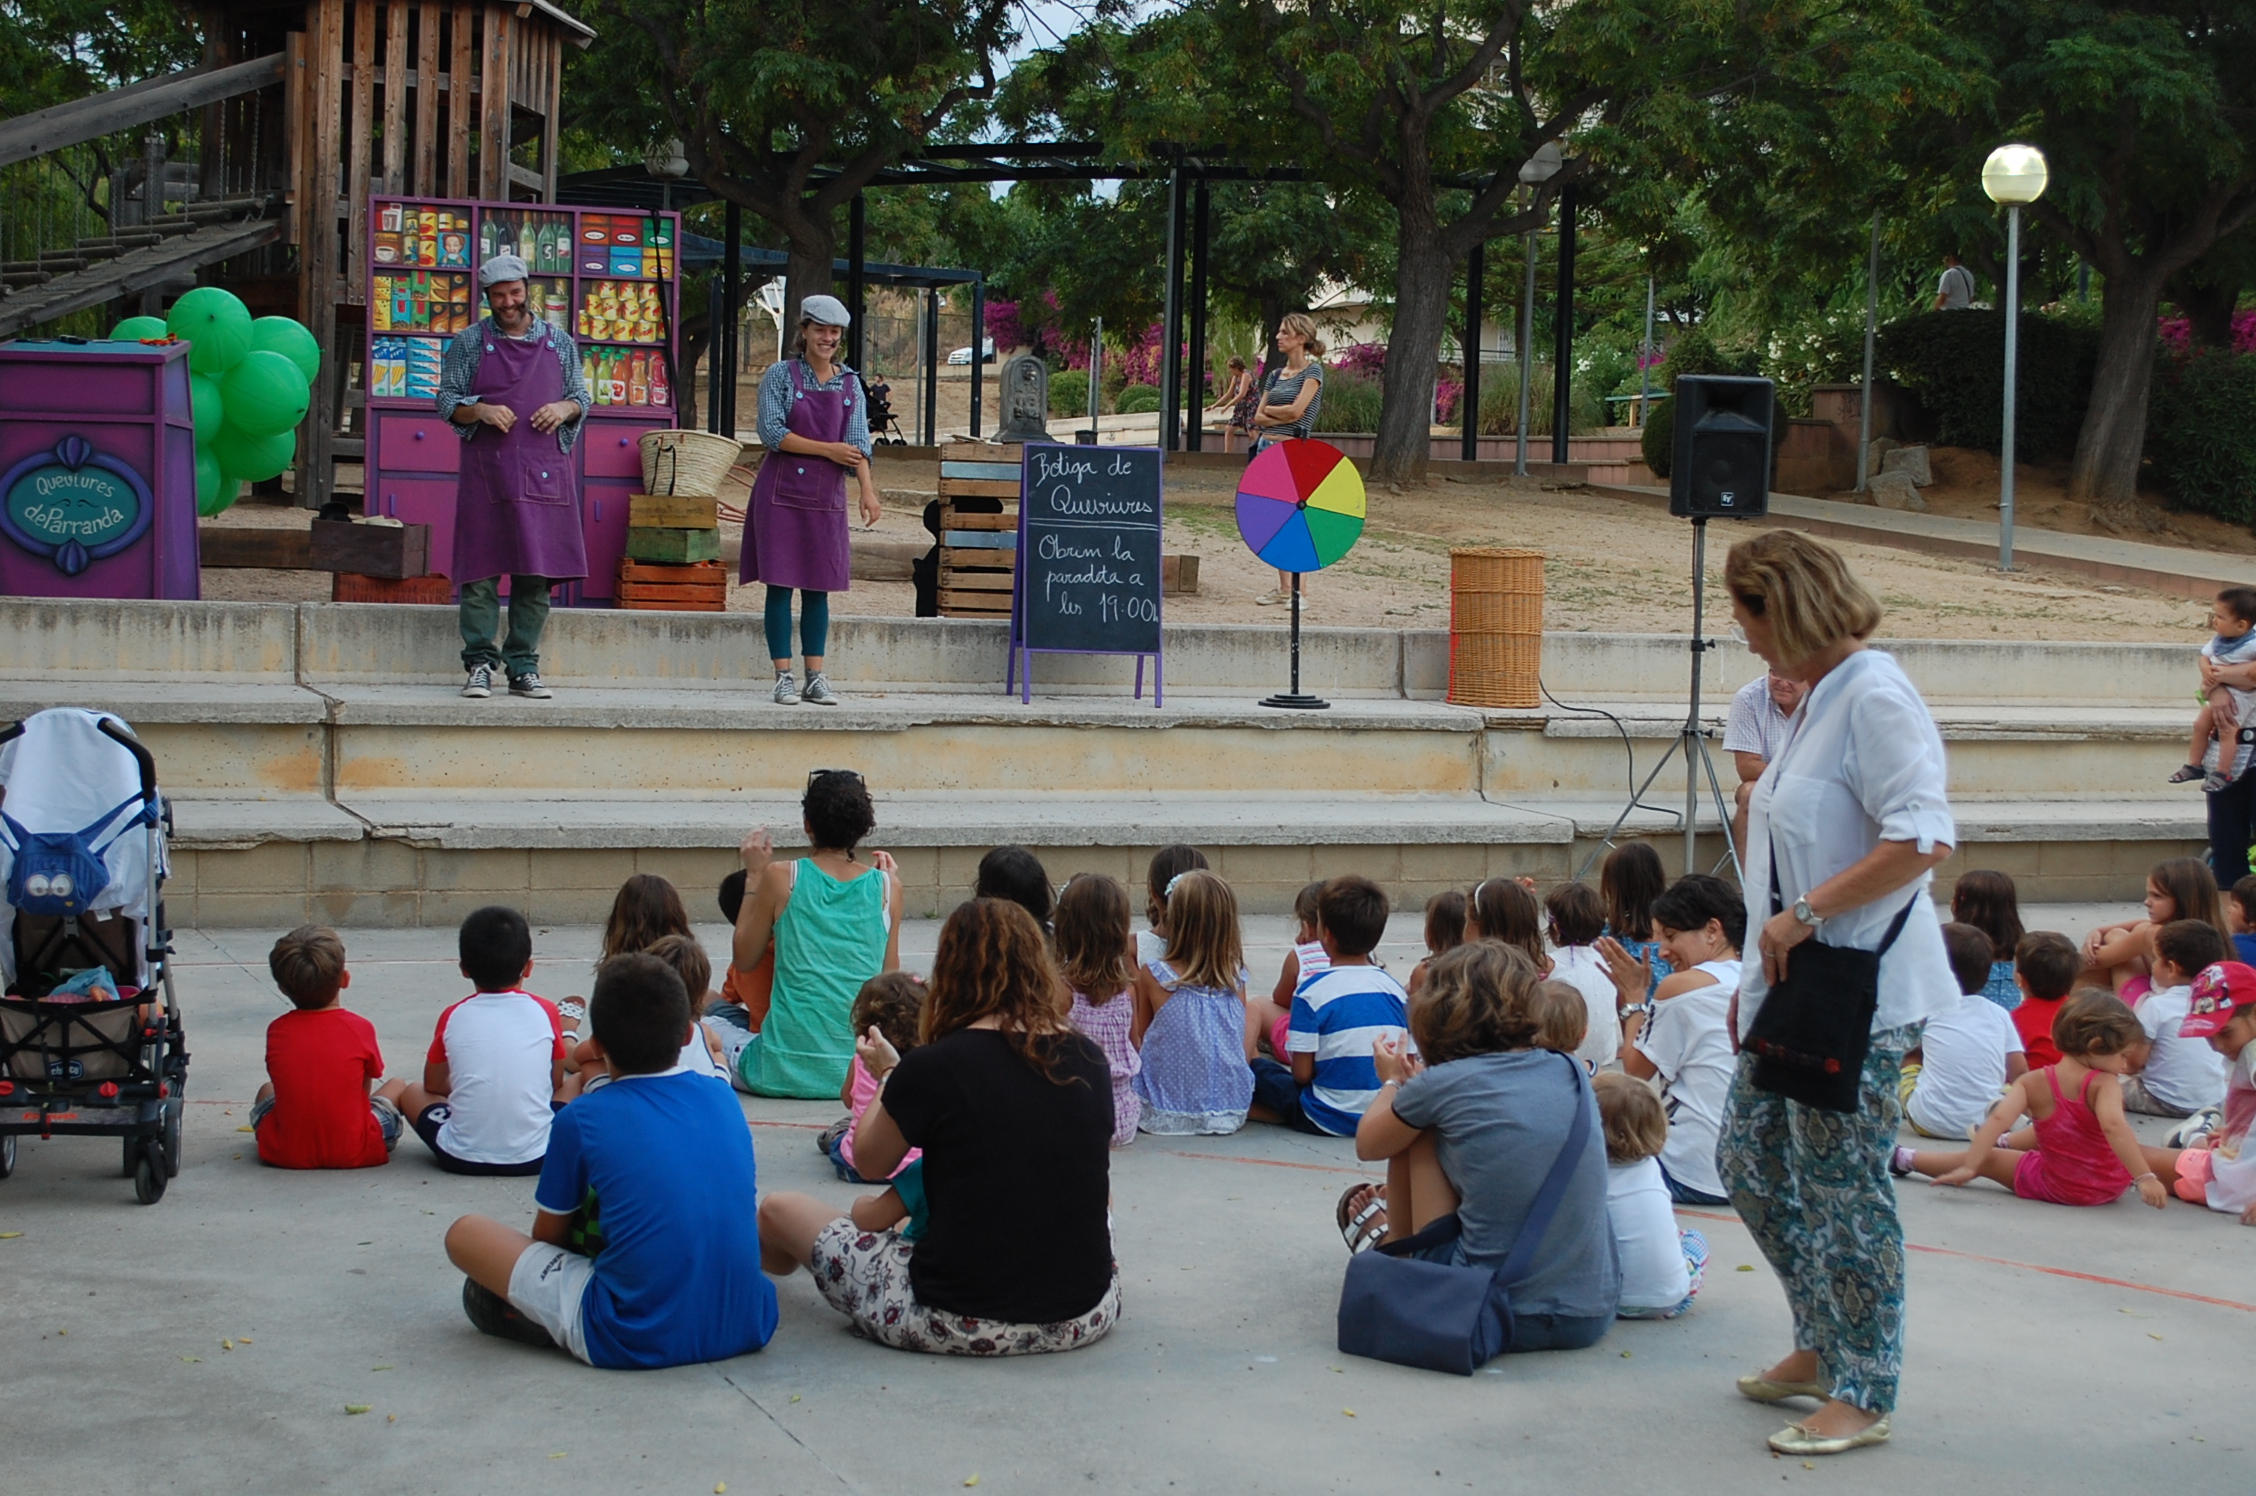 Dilluns 20 de juliol de 2015, espectacle infantil al parc de Sant Pere